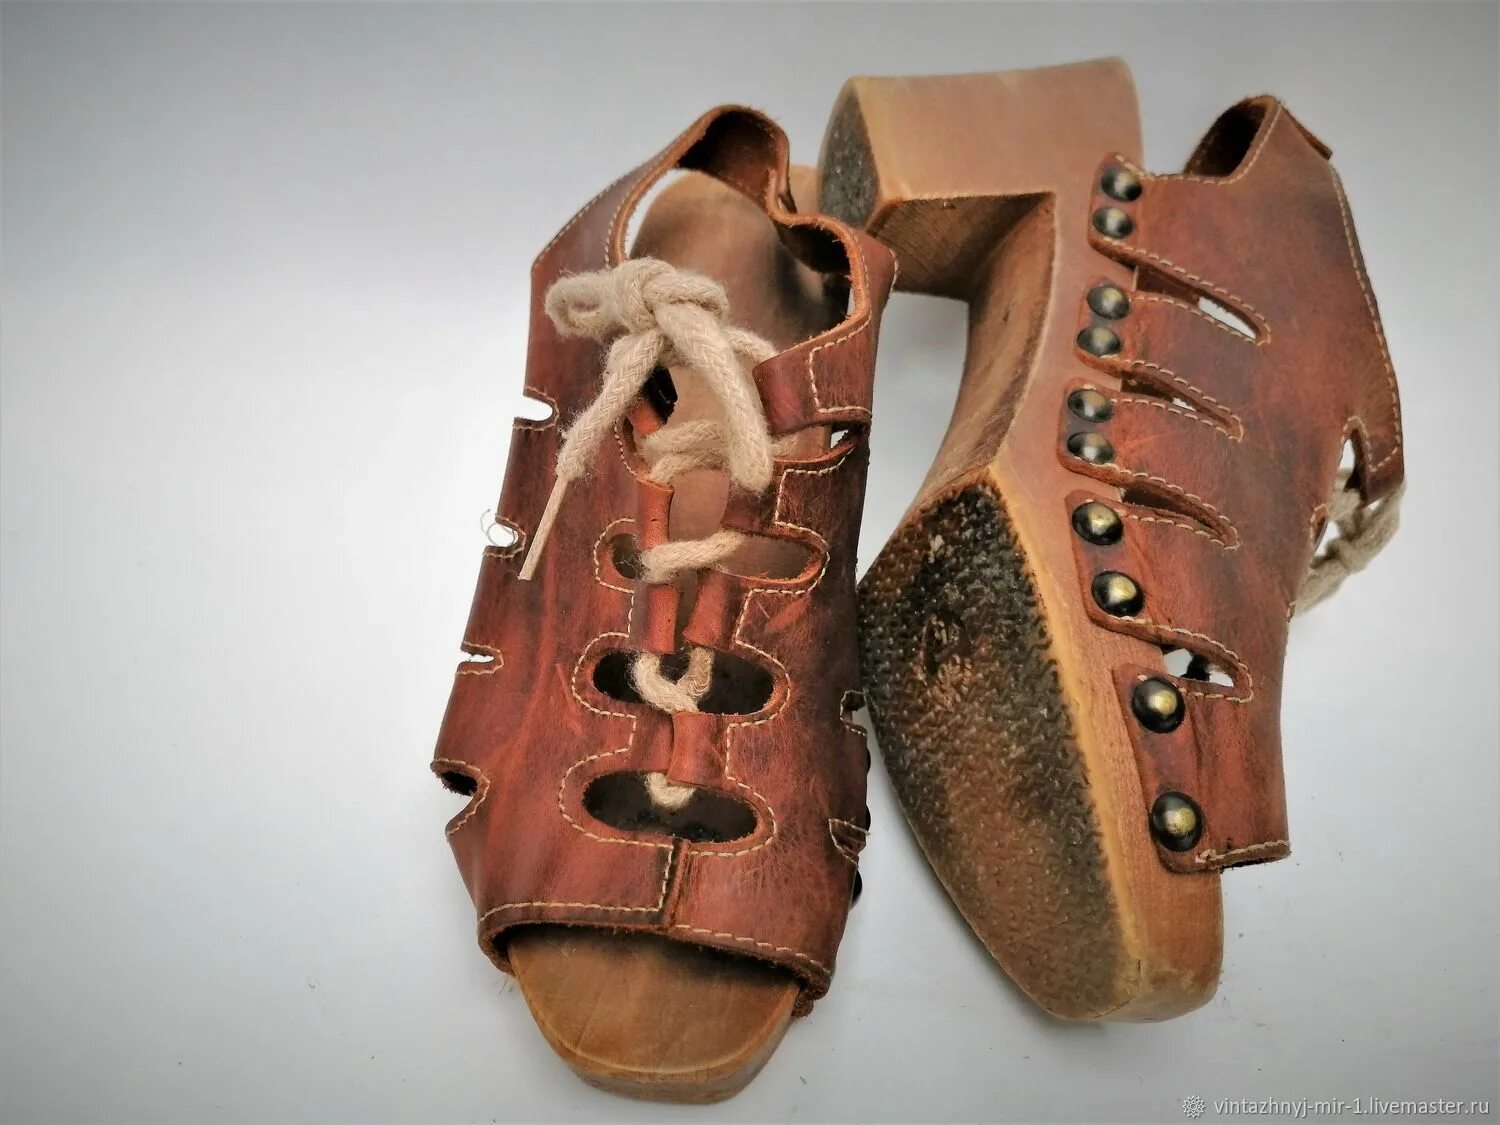 Ботинки с деревянной подошвой. Винтажные обувь. Башмаки на деревянной подошве. Подошва из дерева. Подошвы деревьев